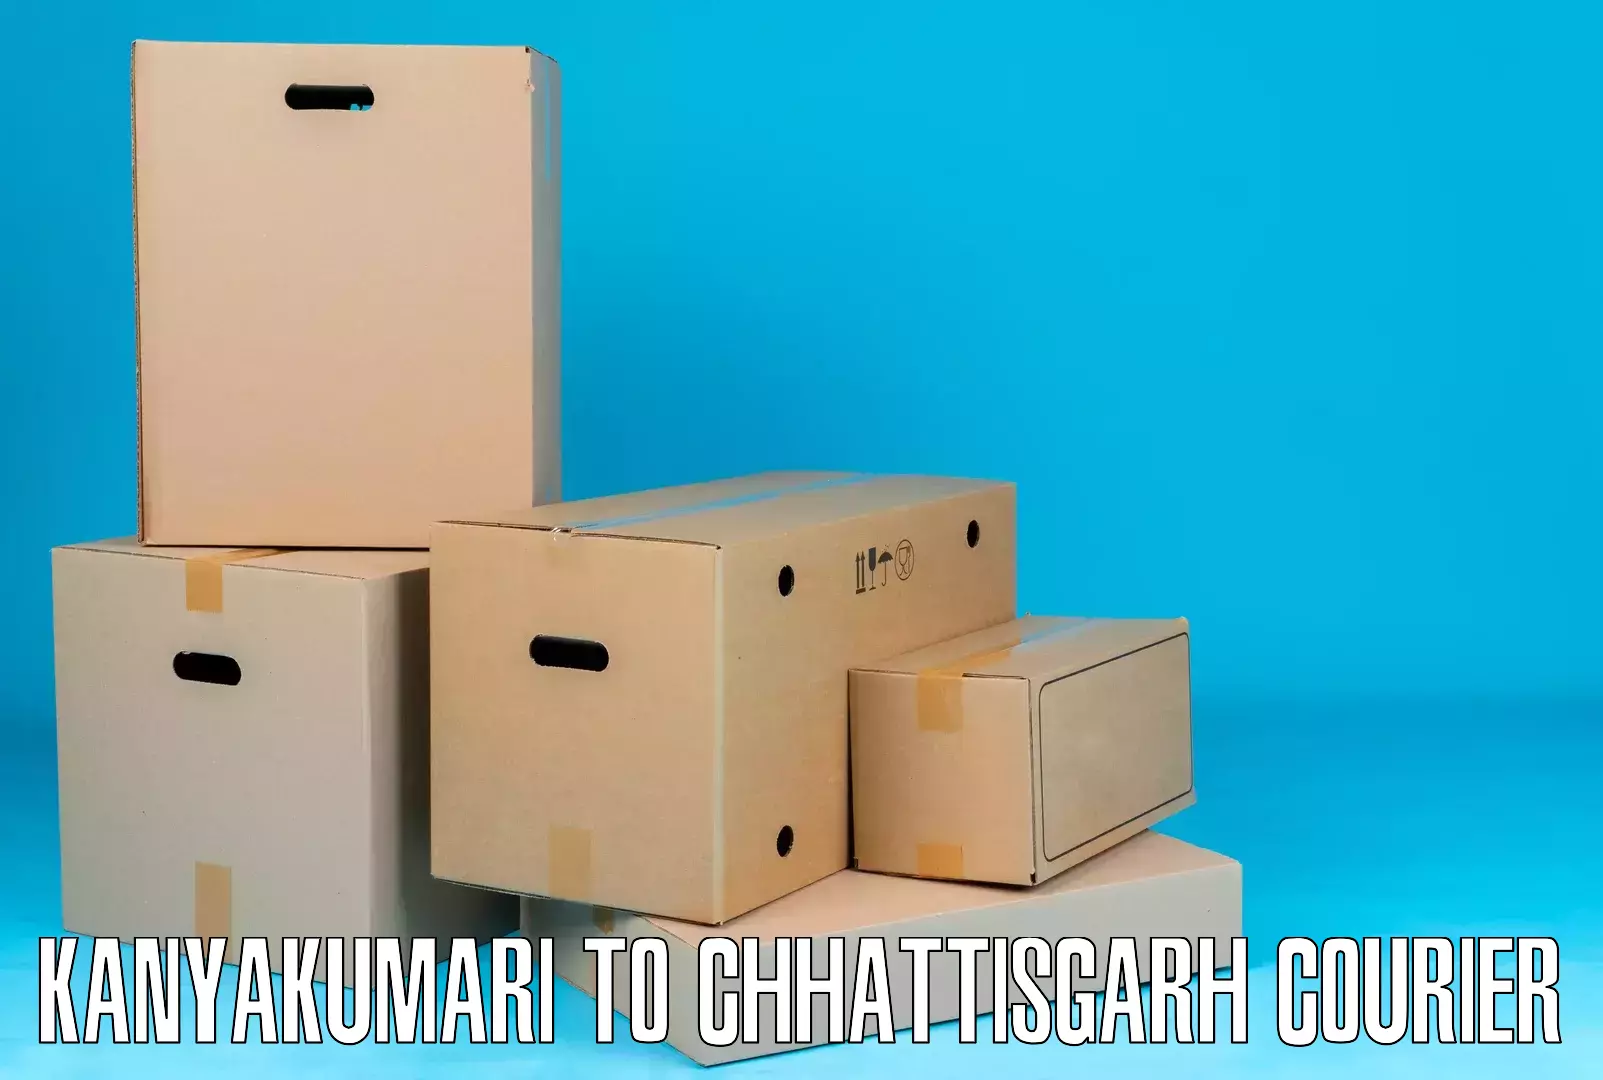 Versatile courier options Kanyakumari to Akaltara